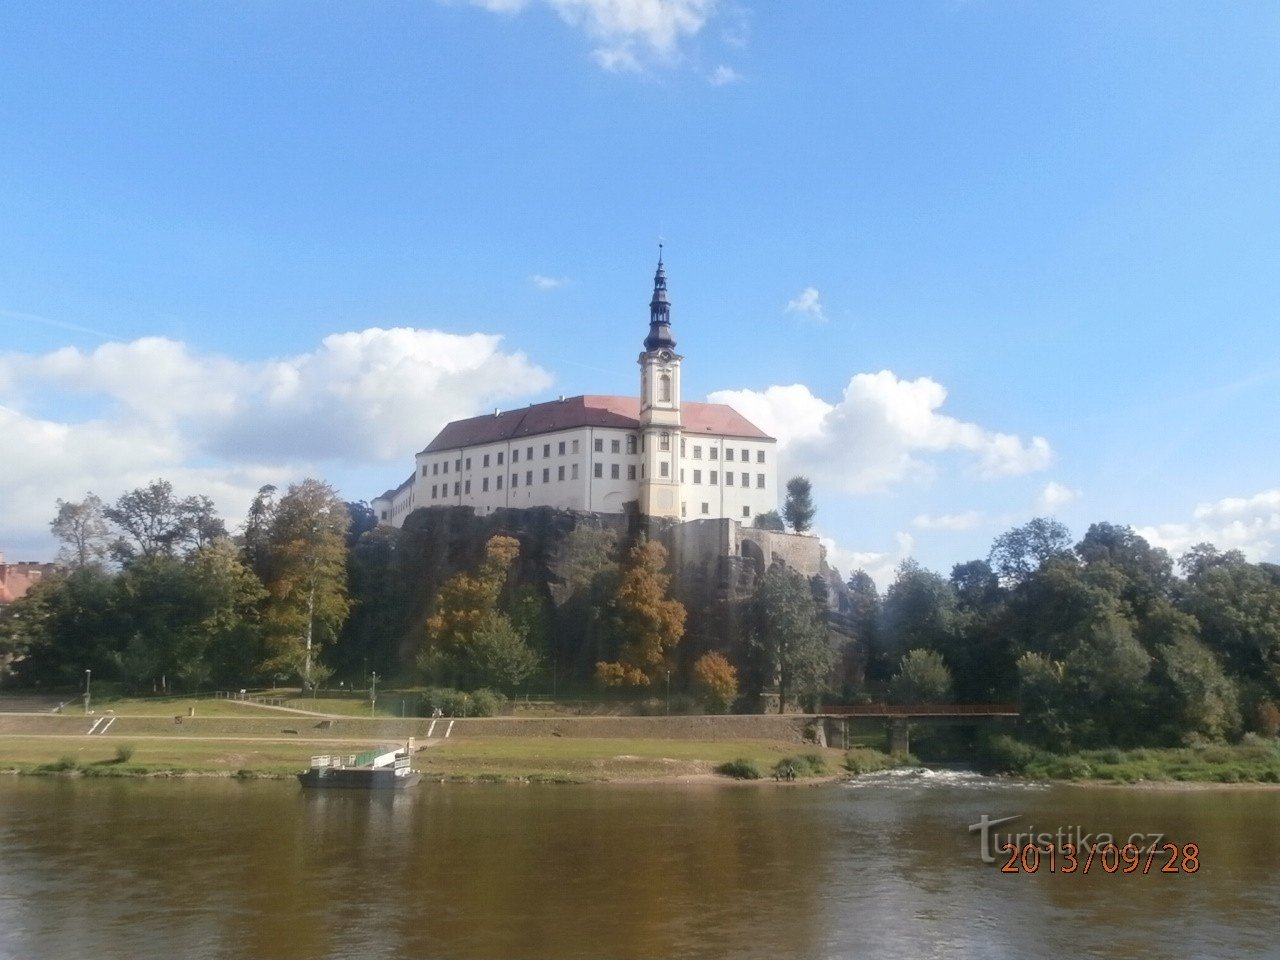 Děčín: ZOO and castle